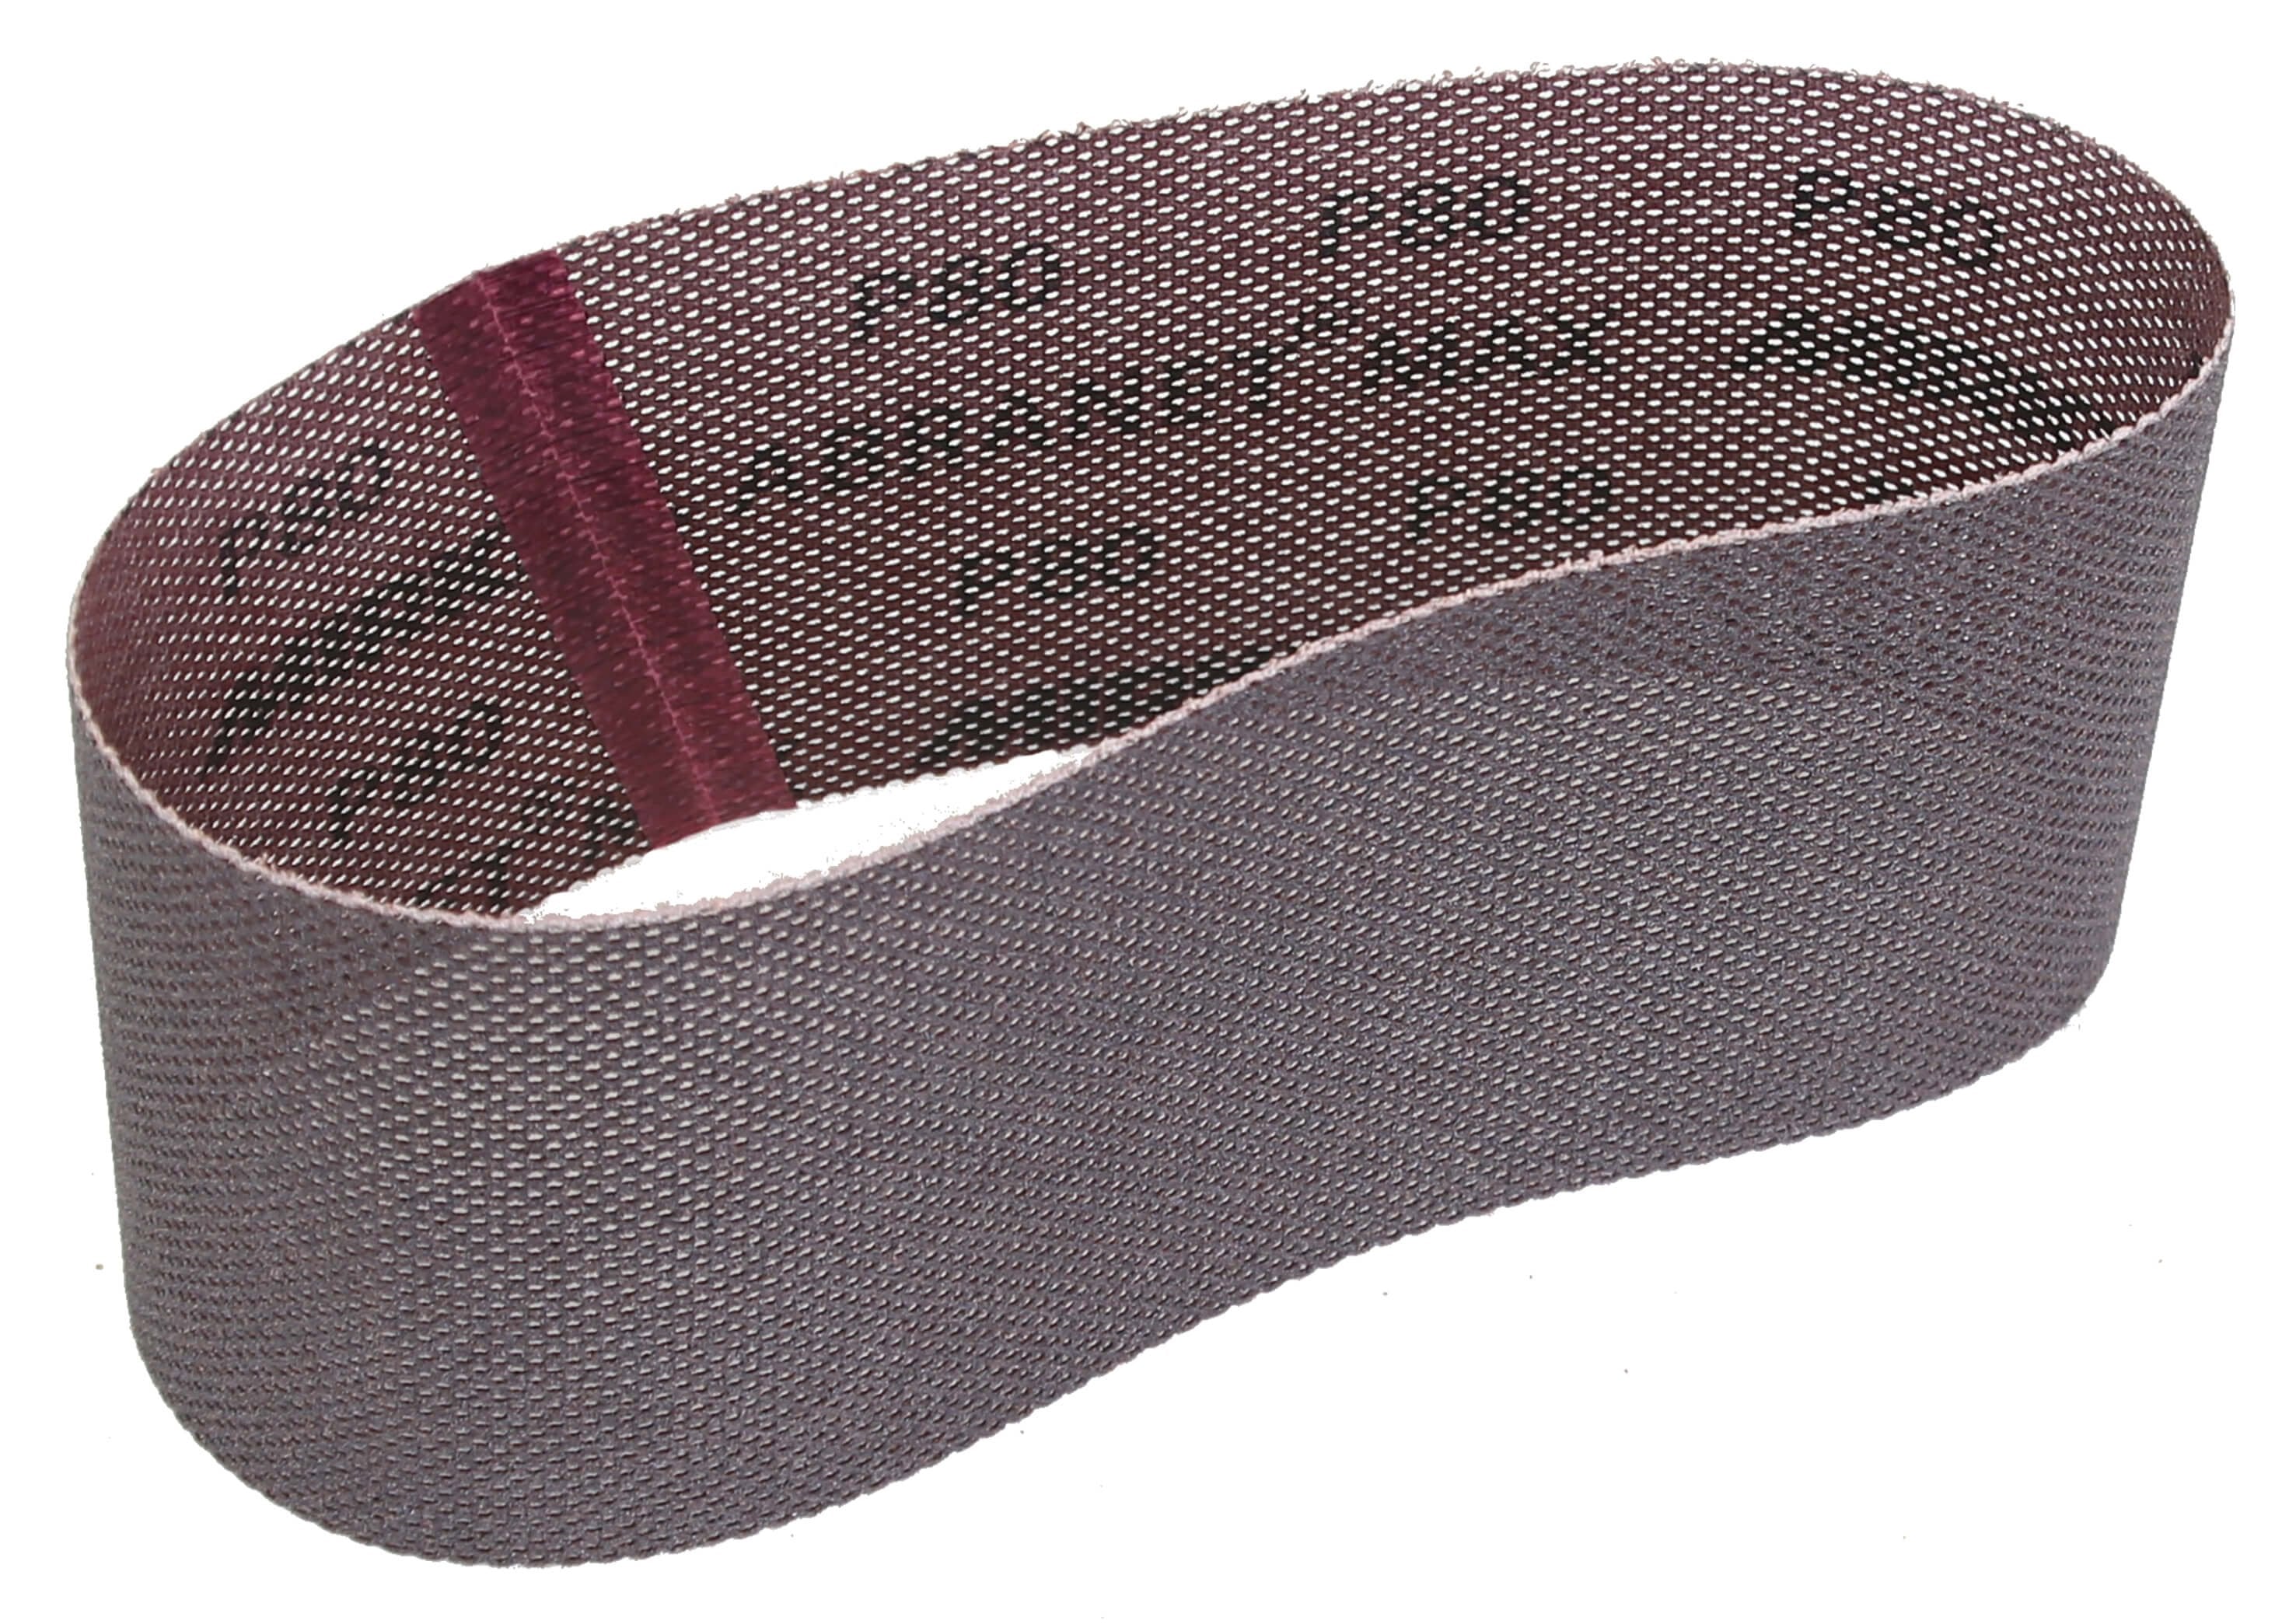 Mirka Abranet Max 3" x 21" x 80gr Sanding Belt